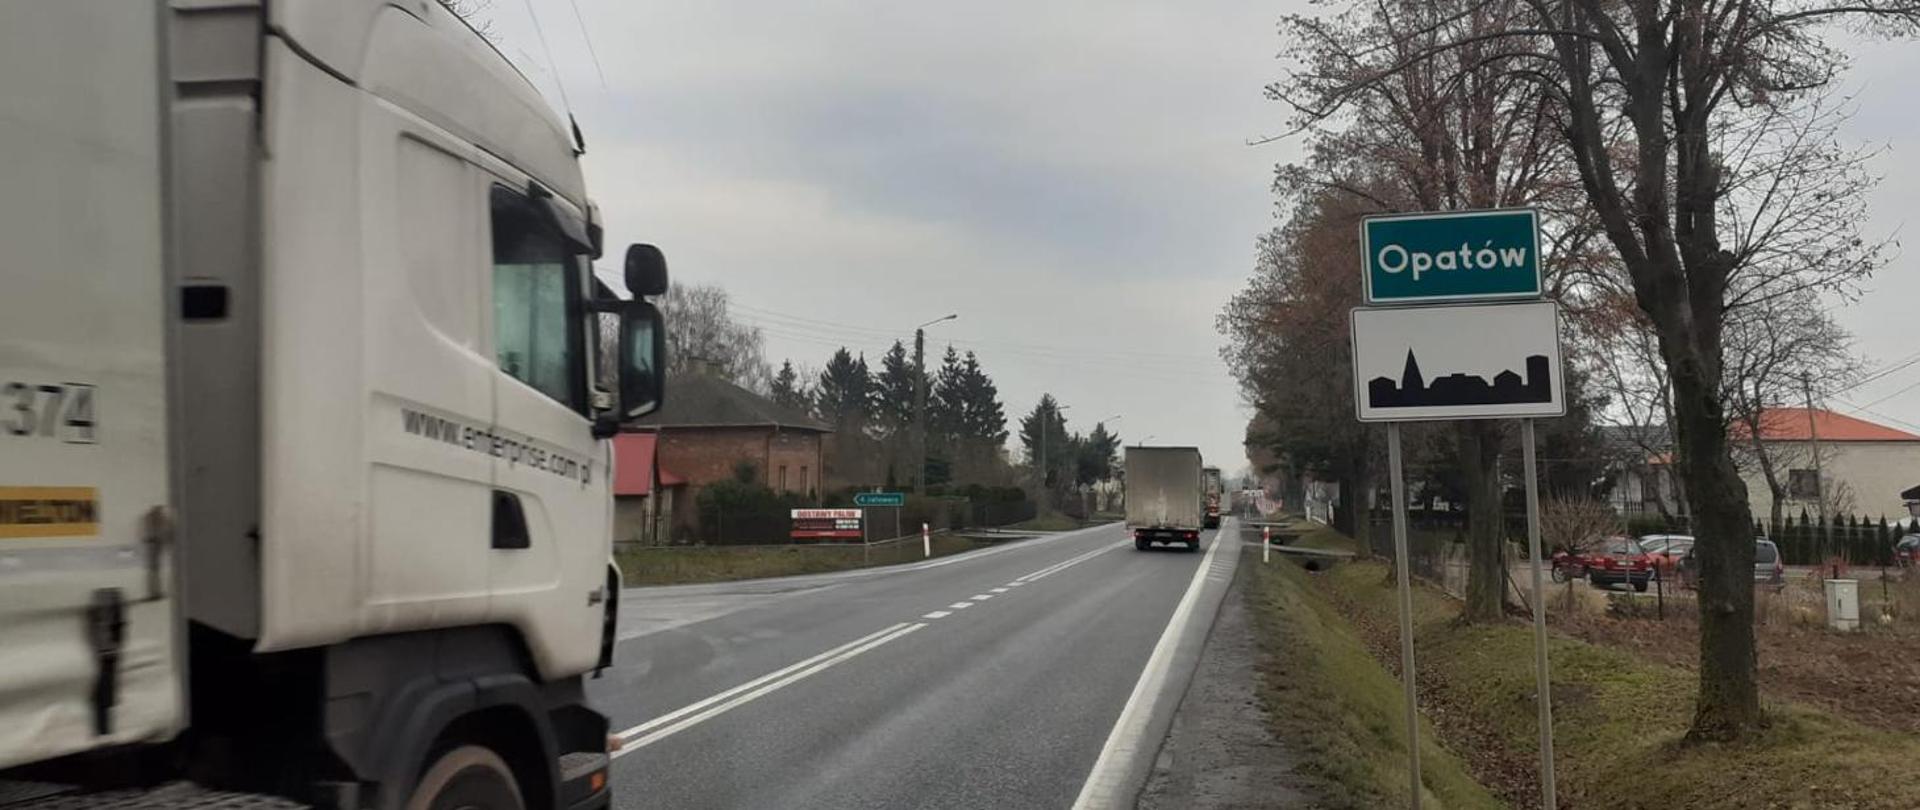 Wjazd do Opatowa DK74 od strony Kielc (jednojezdniowa droga, ciężarówka, tablica z nazwą miasta i oznakowanie terenu zabudowanego) 